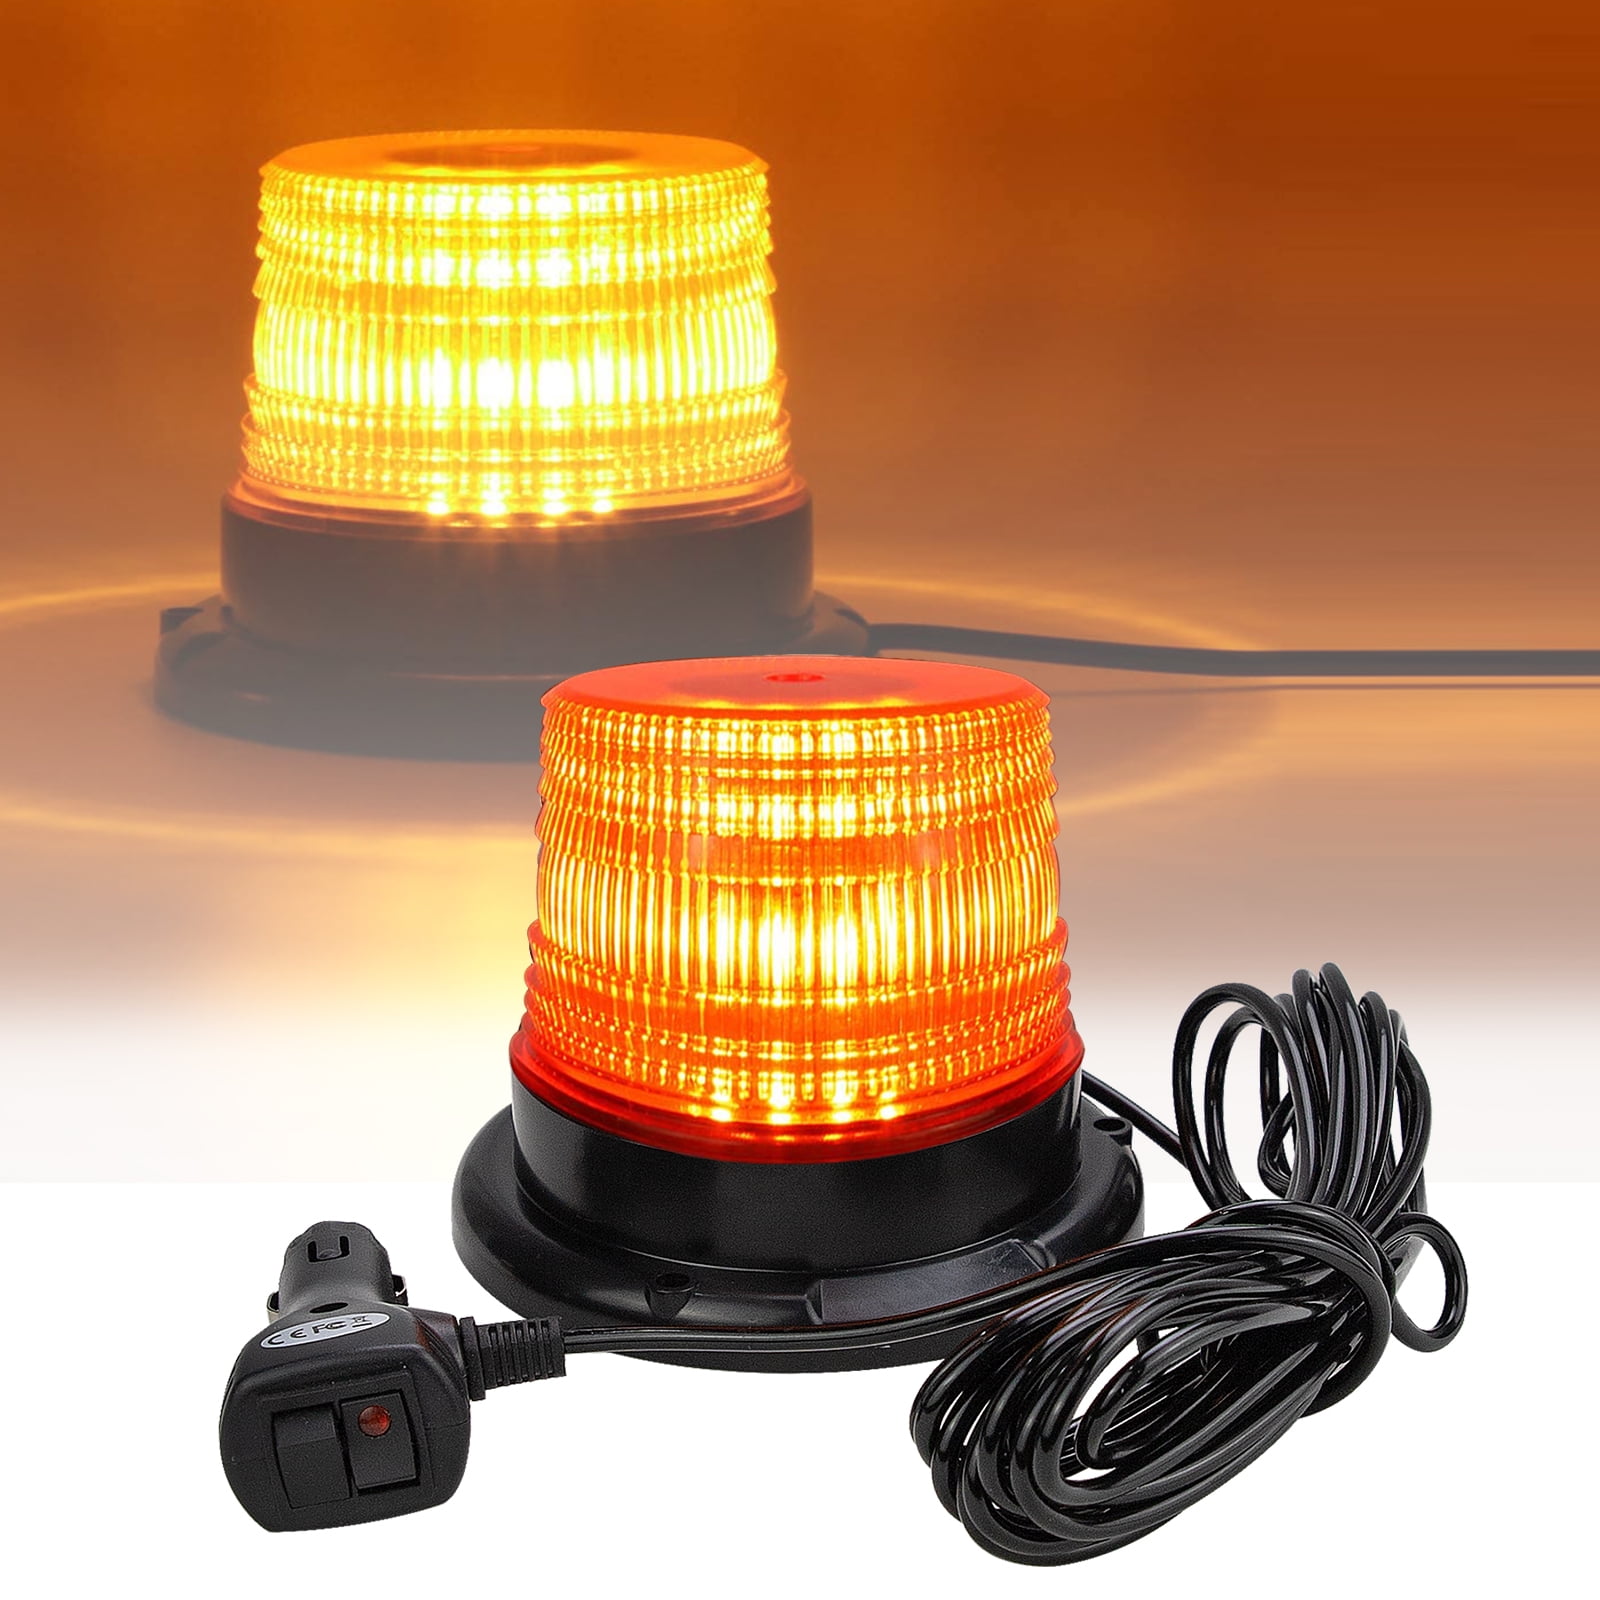 LED-Warn-Blitzer, orange, 12V/24V - Hammerkauf